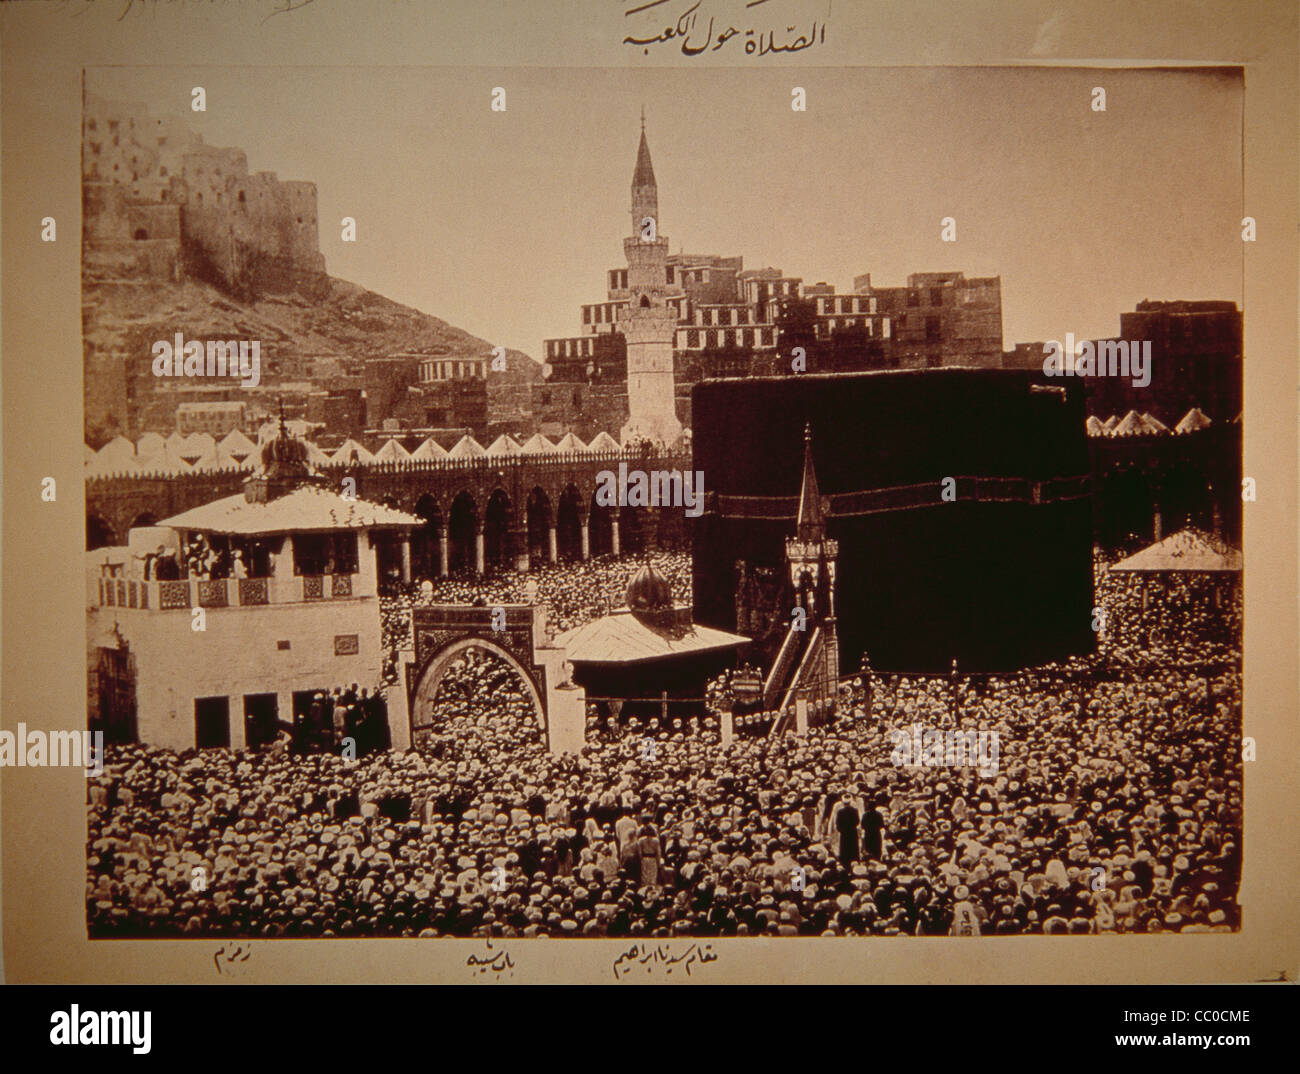 Mekka, Saudi-Arabien - Ca. 1880s - ein seltenes Foto von der Moschee in Mekka von einem unbekannten Fotografen. Stockfoto